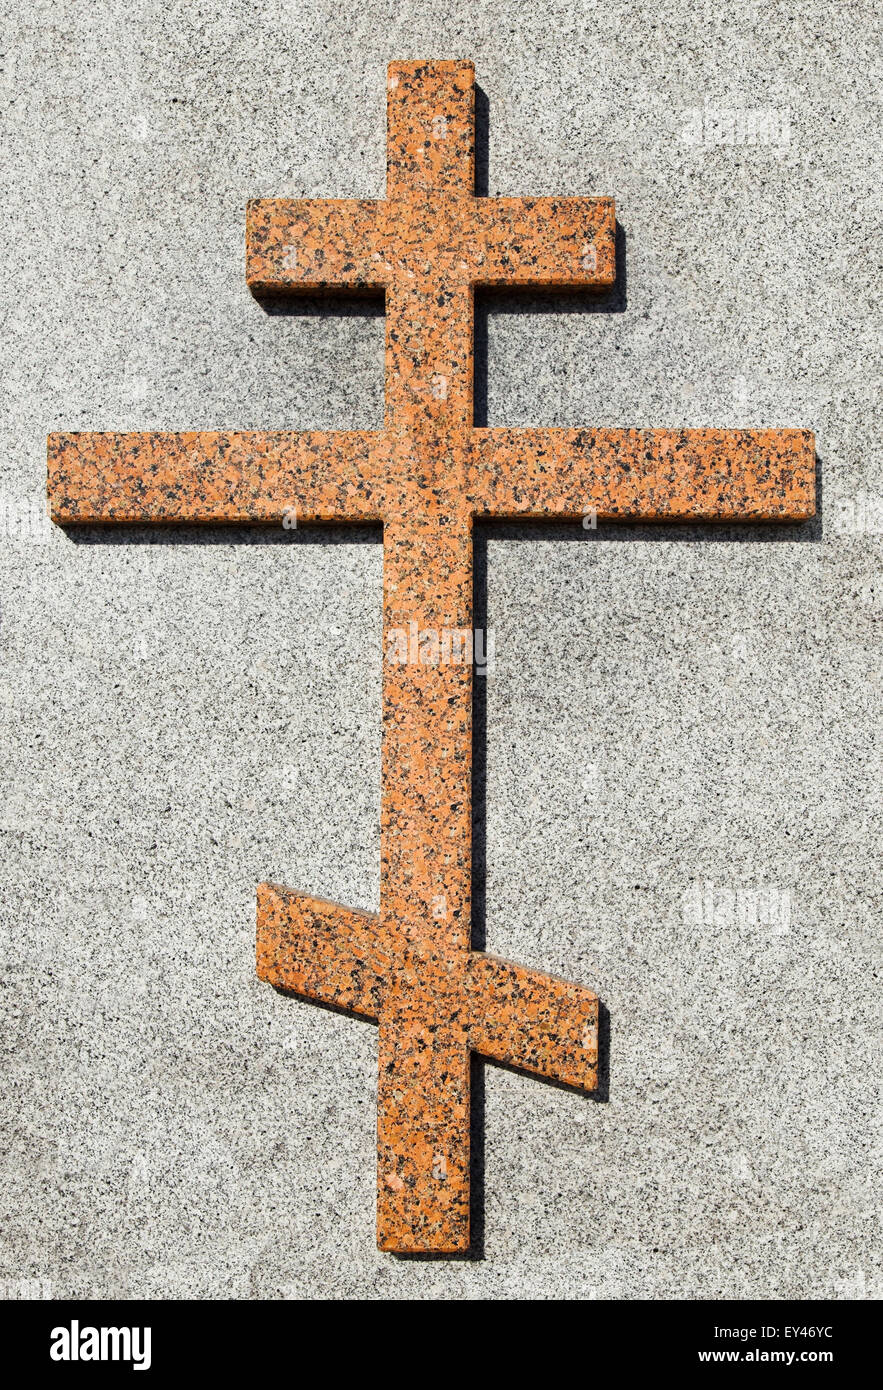 Croce ortodossa immagini e fotografie stock ad alta risoluzione - Alamy